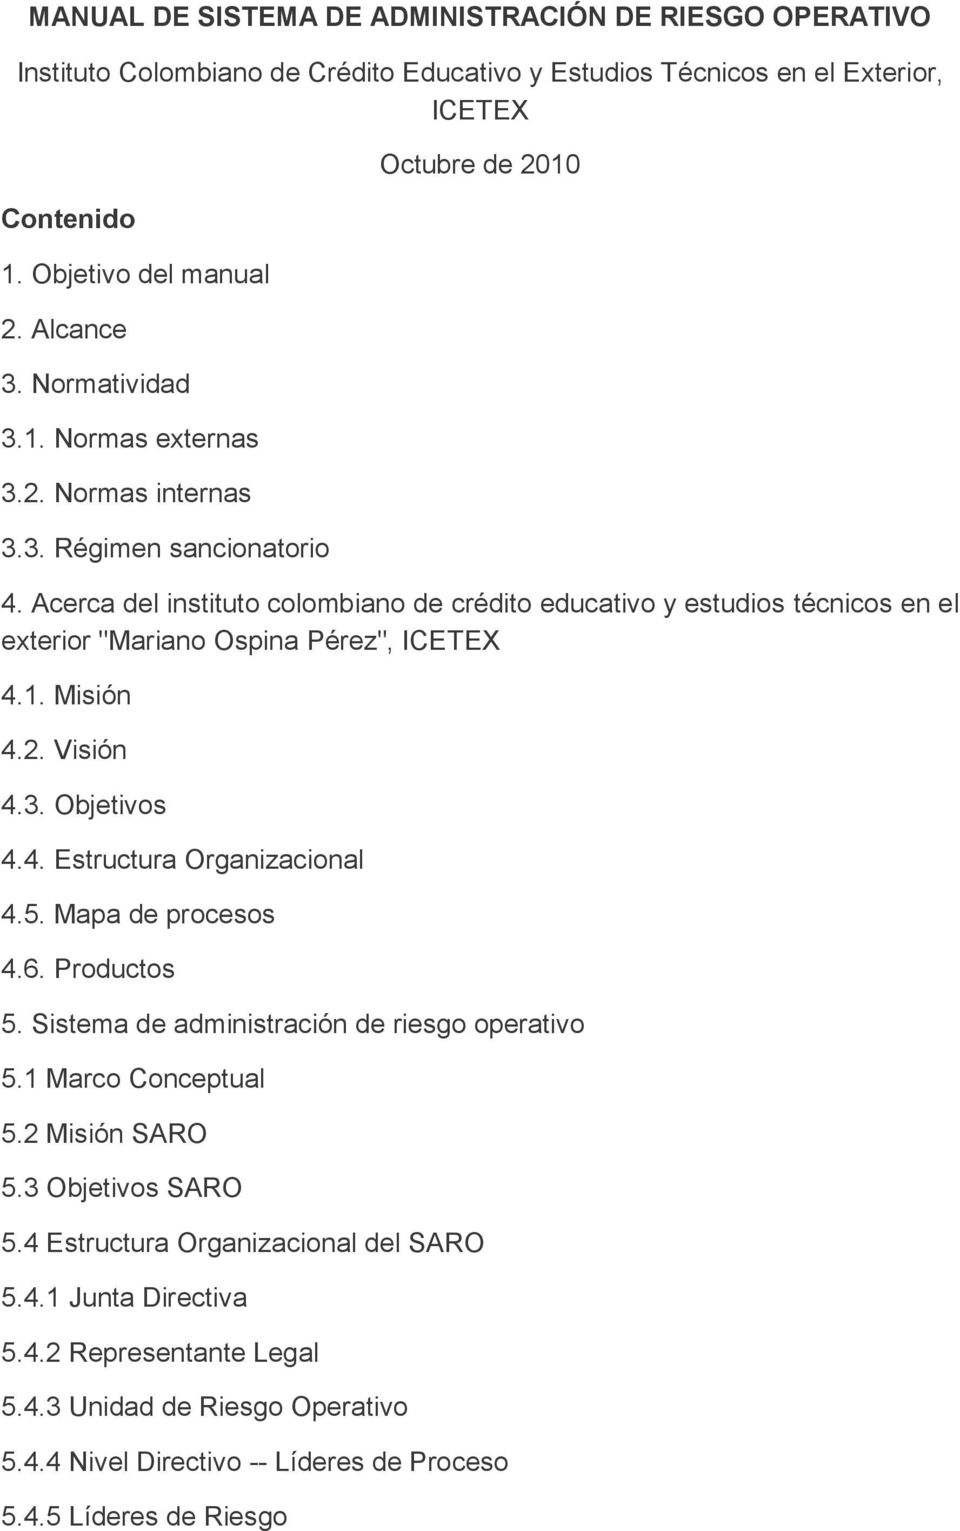 Acerca l instituto colombiano crédito educativo y estudios técnicos en el exterior "Mariano Ospina Pérez", ICETEX 4.1. Misión 4.2. Visión 4.3. Objetivos 4.4. Estructura Organizacional 4.5.